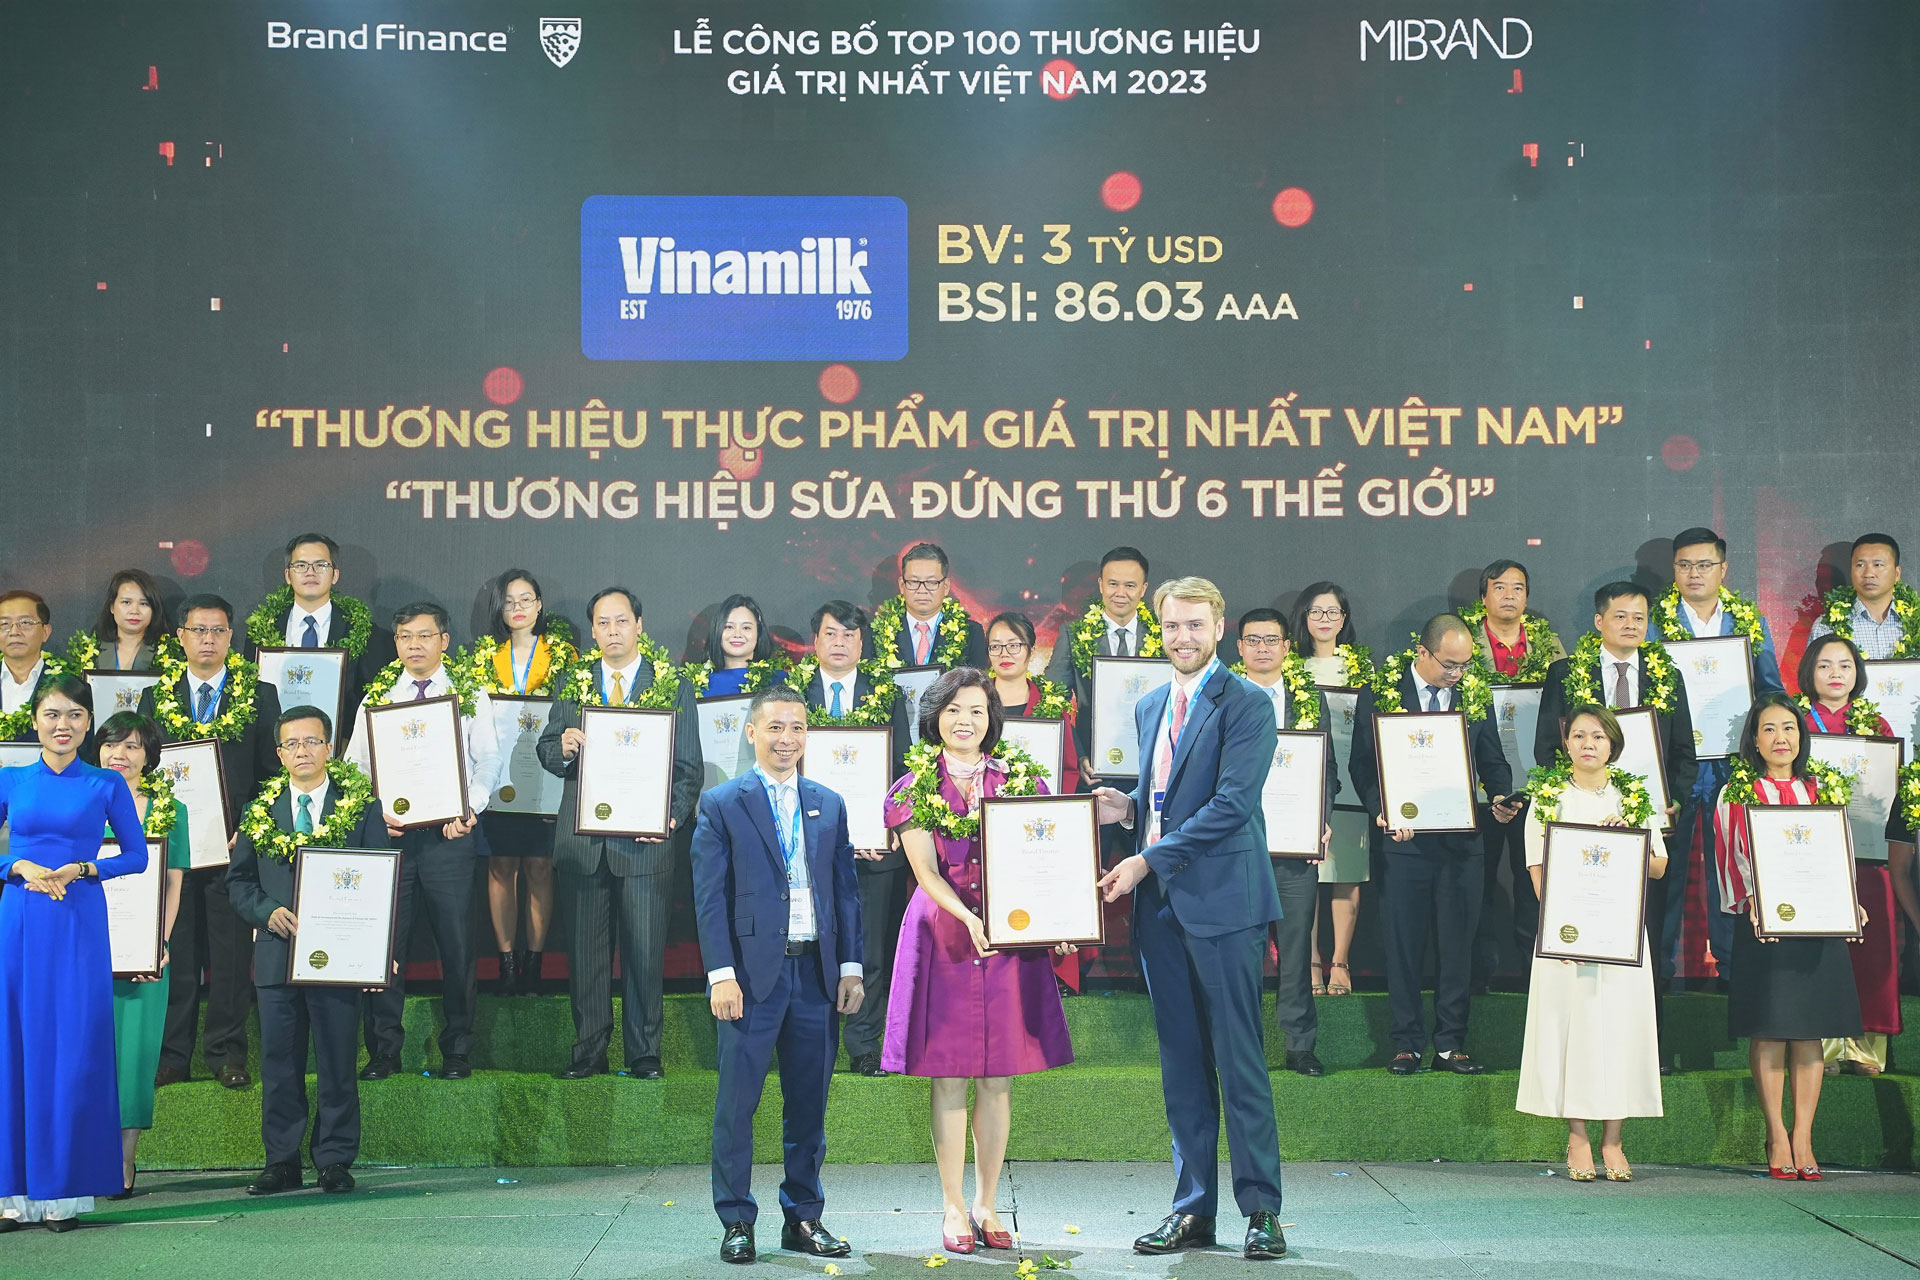 Thương hiệu thực phẩm giá trị nhất Việt Nam